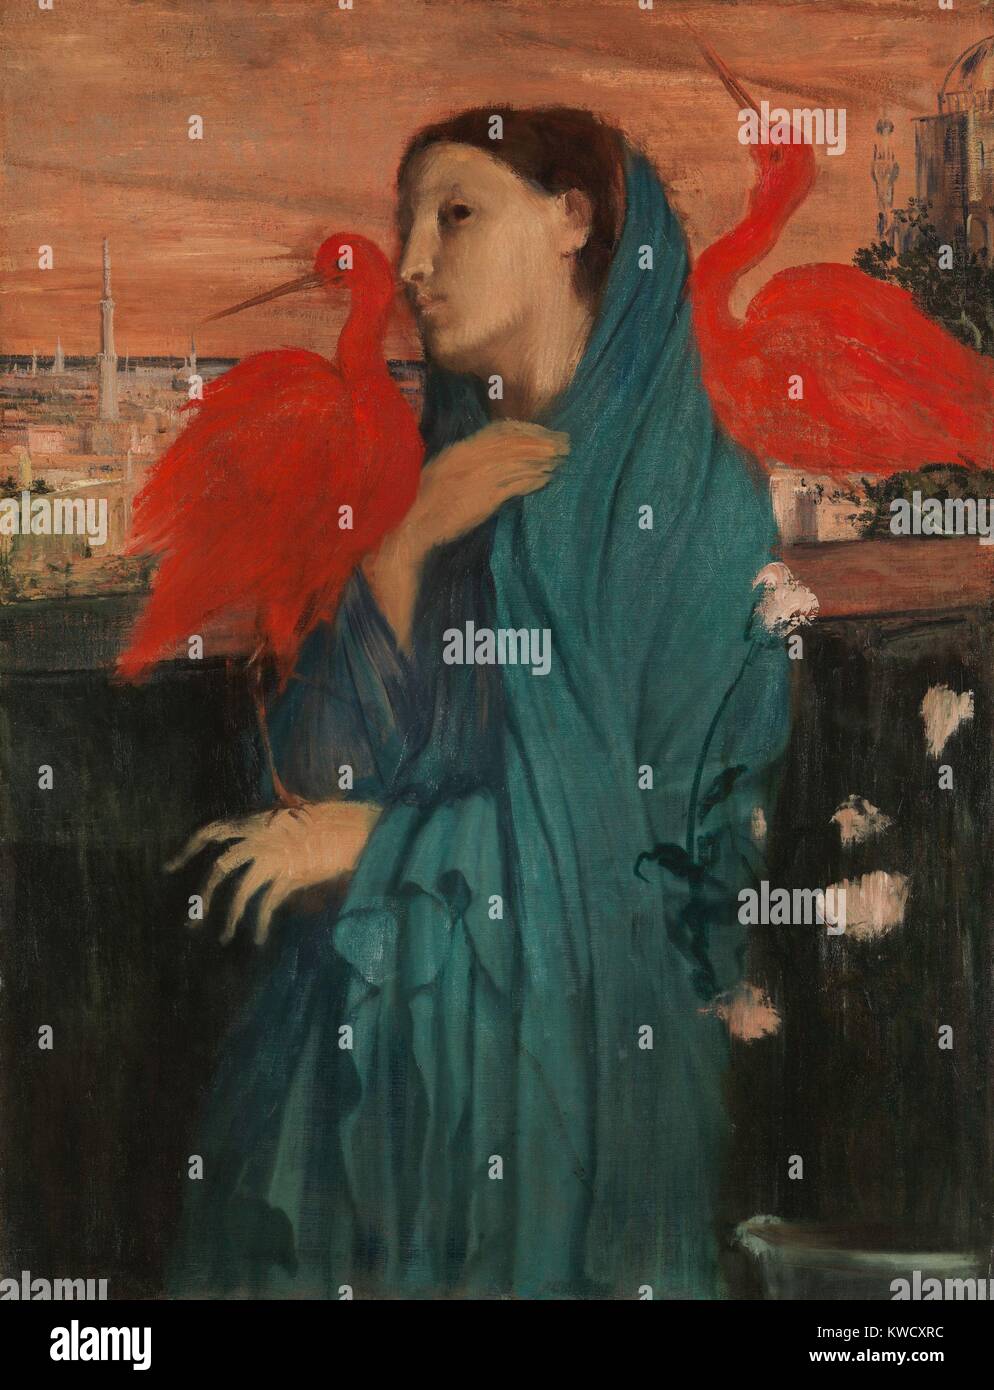 Junge Frau mit Ibis, von Edgar Degas, 1860-62, französischer impressionistischer Malerei, Öl auf Leinwand. Degas hinzugefügt Fantasy zu seinem Porträt einer Frau mit imaginären rote Ibis und einem Mittleren Osten Stadtbild (BSLOC 2017 3 96) Stockfoto